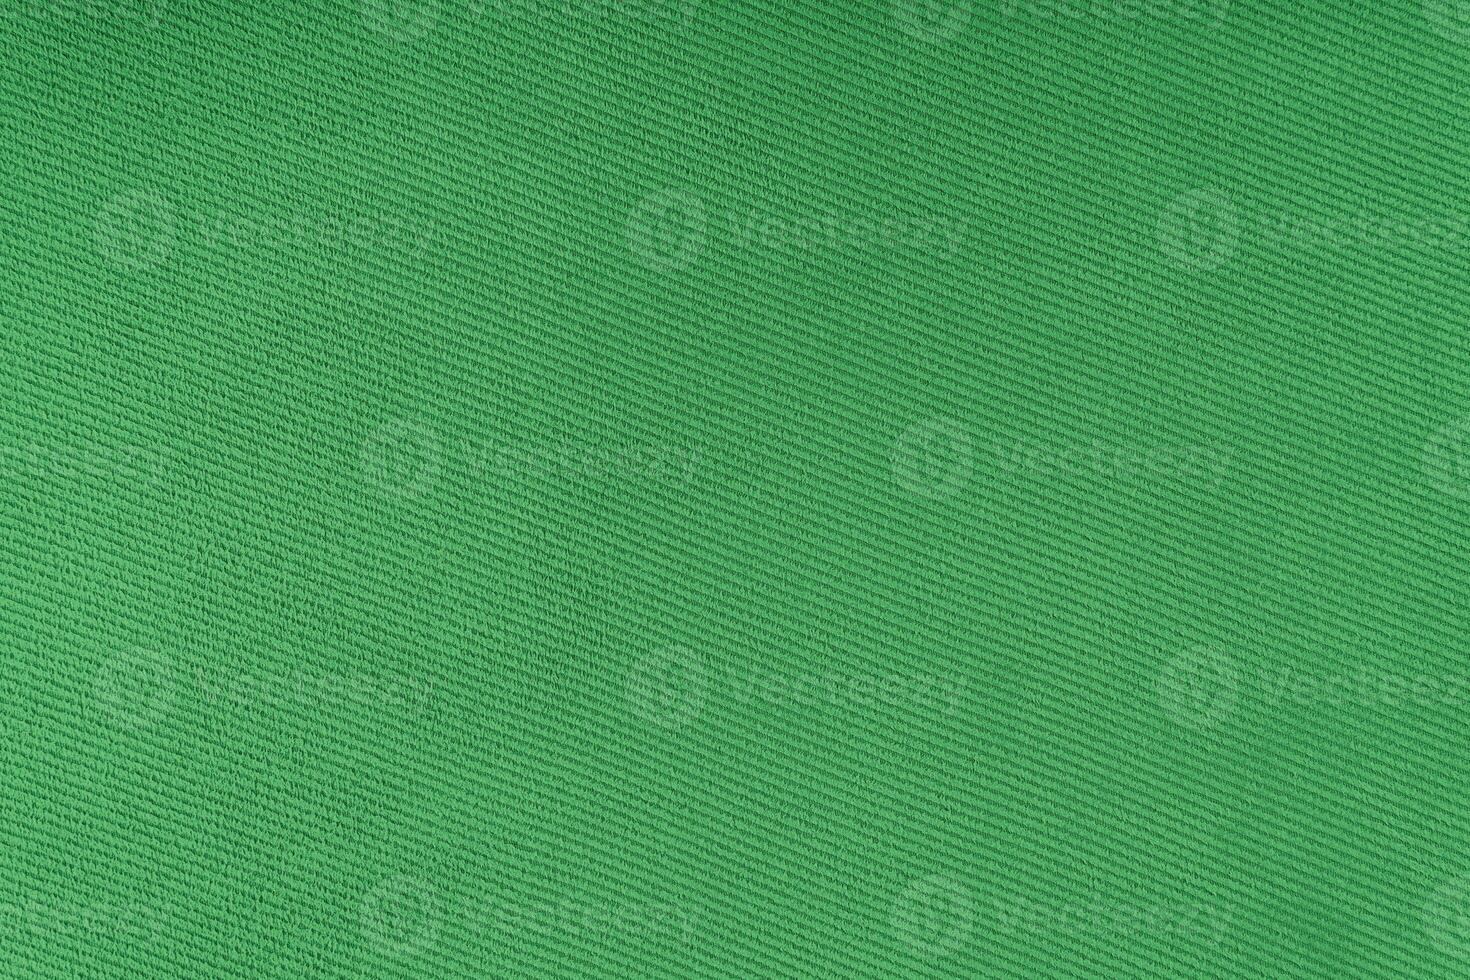 textura do padrão de tecelagem diagonal de tecido verde. fundo têxtil decorativo foto